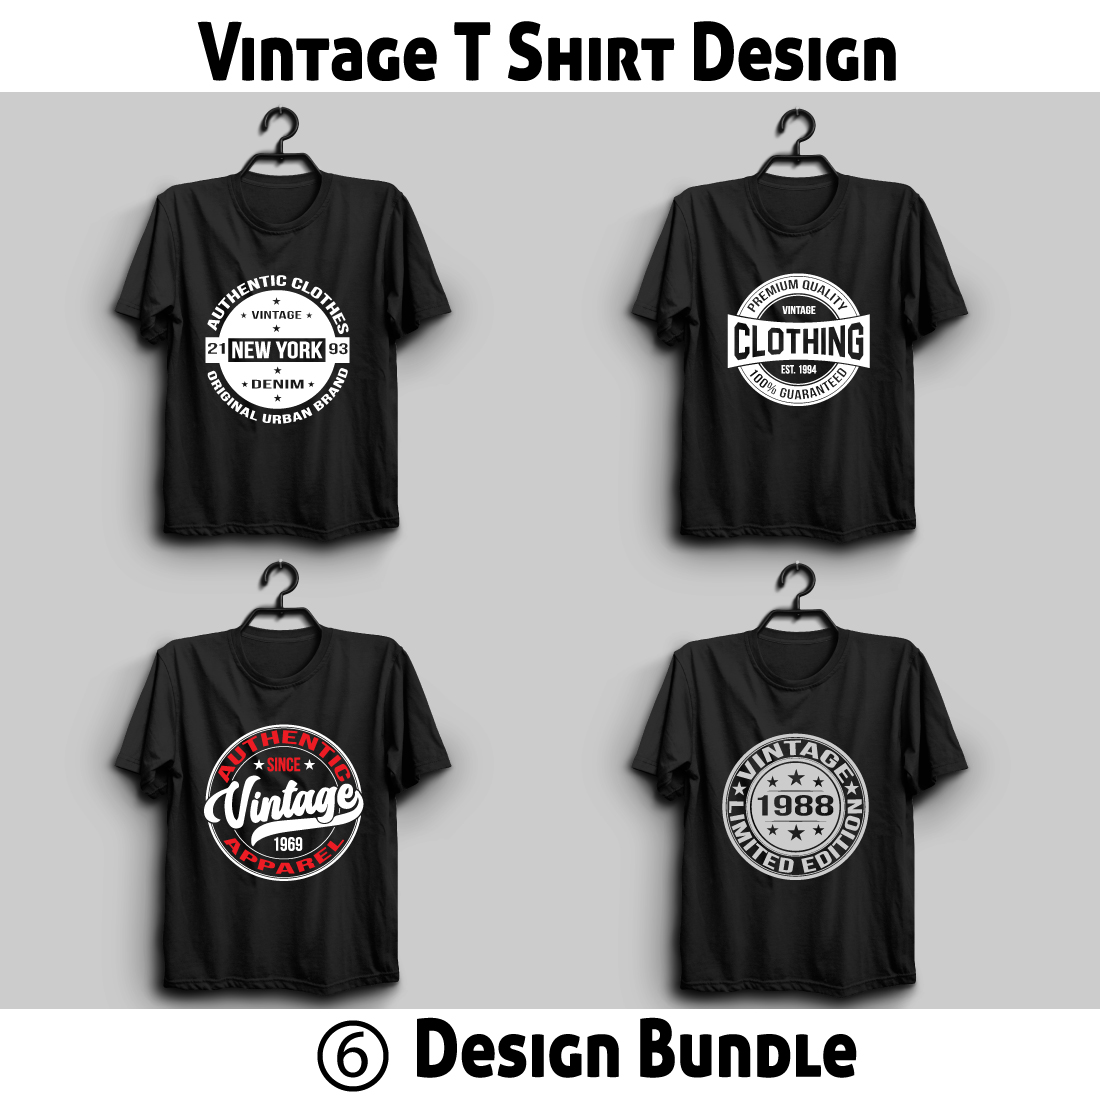 Vintage T shirt Design Bundle cover image.